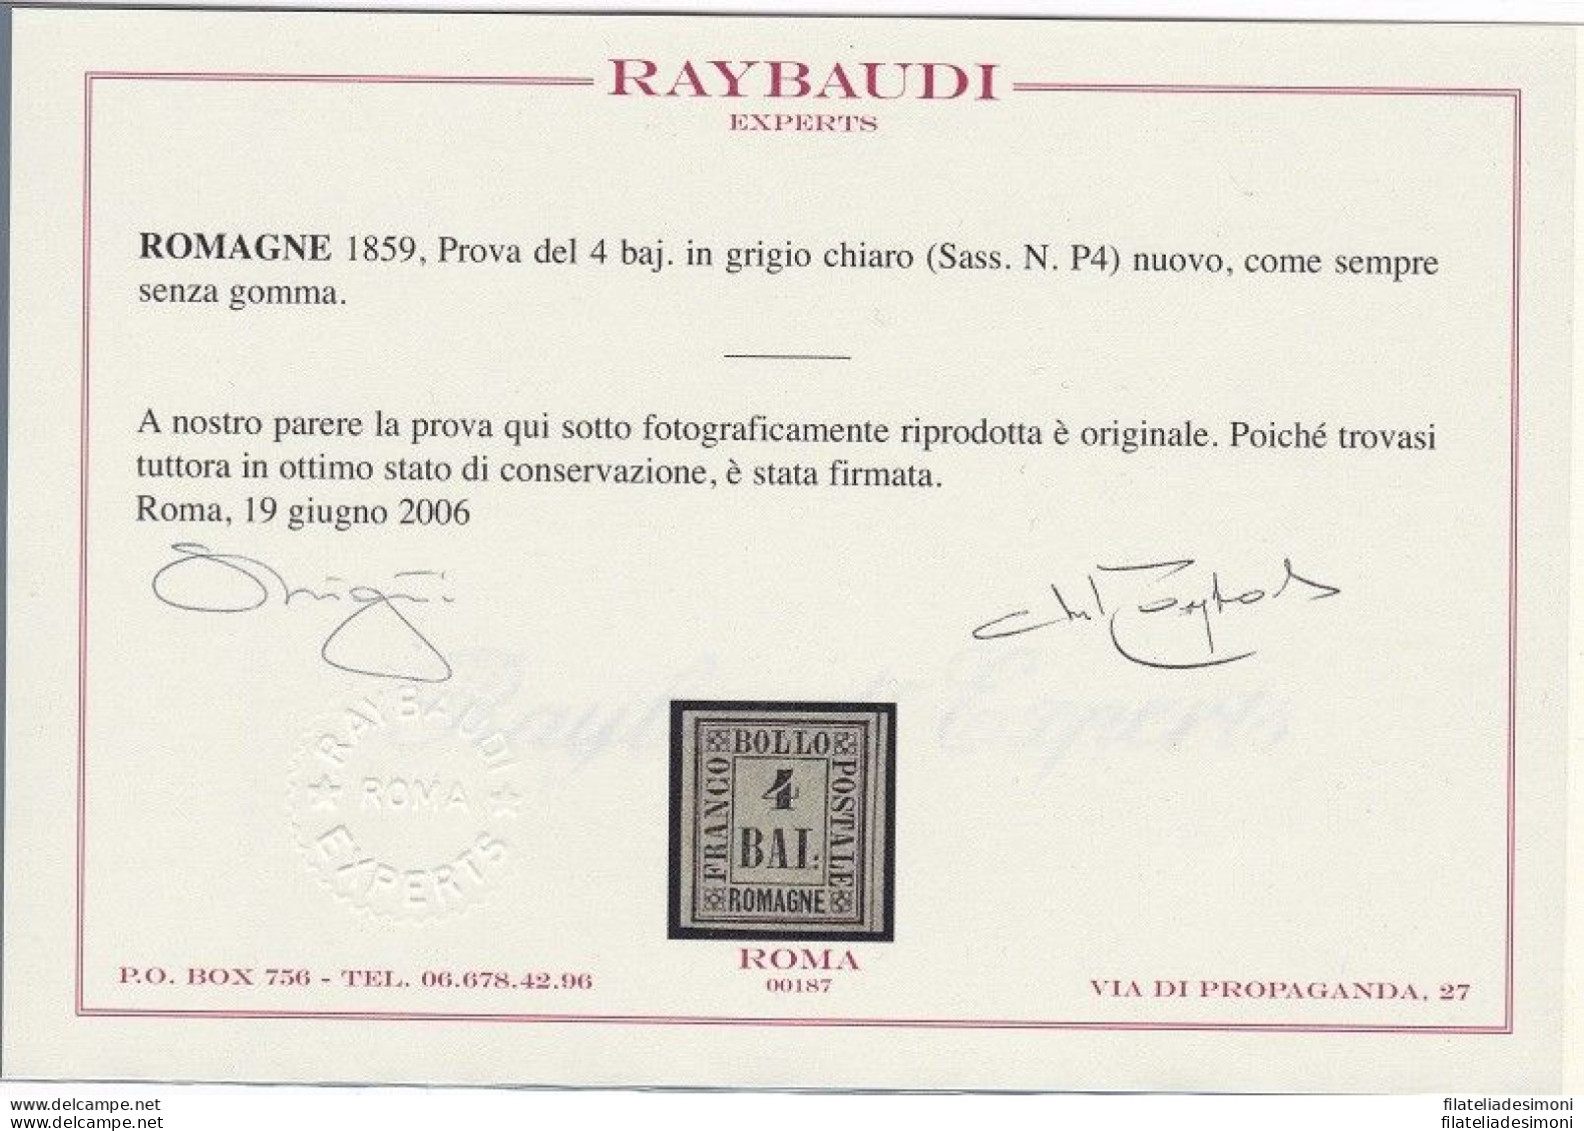 1859 Romagne, Prova Del 4 Baj (P4) EMESSO SENZA GOMMA Certificato Raybaudi - Romagne